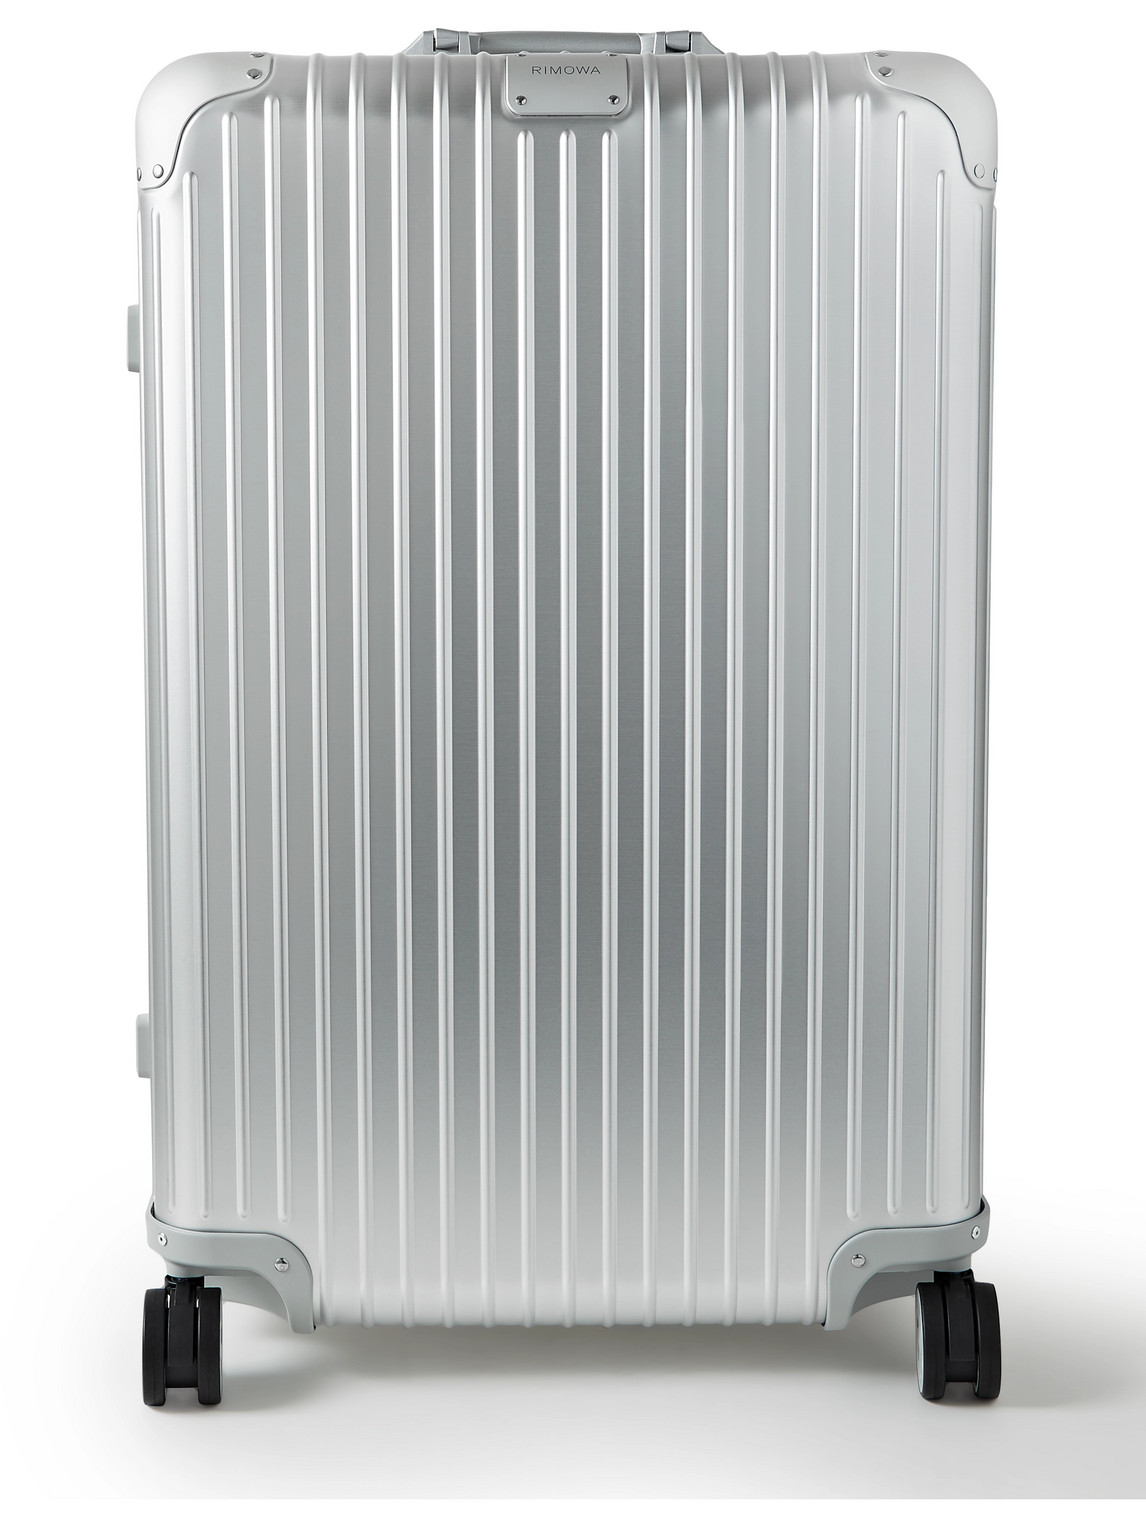 Rimowa Original Check-in Large 79cm Aluminium Suitcase In Silver